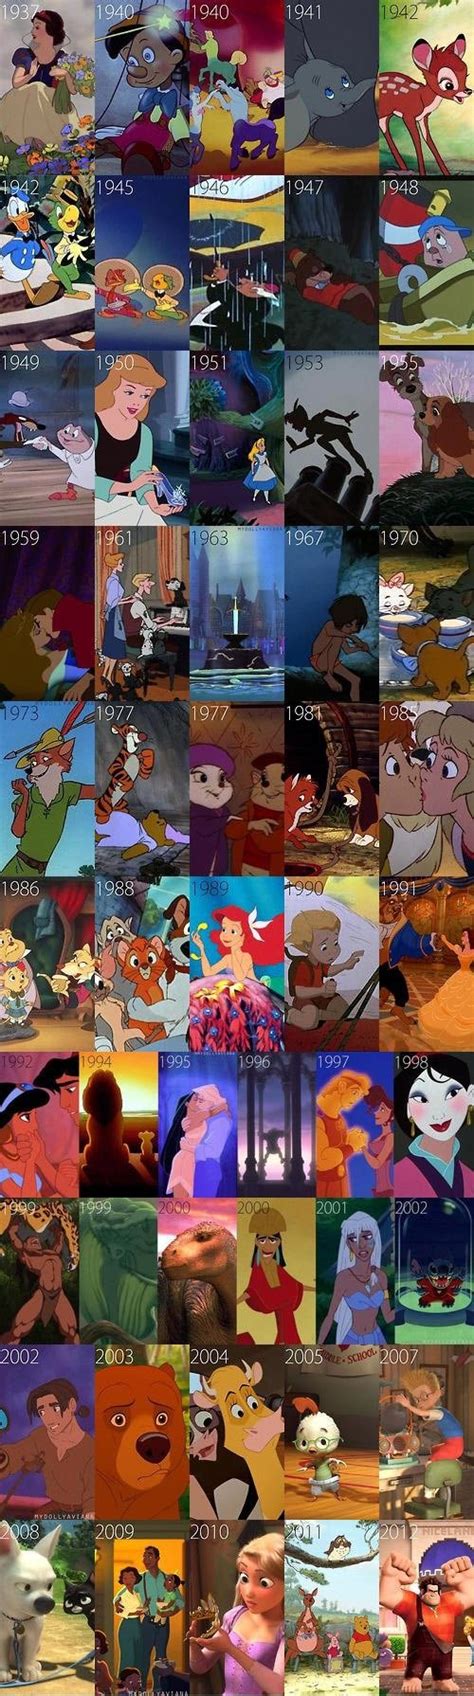 disney animated movies pixar movies disney films disn